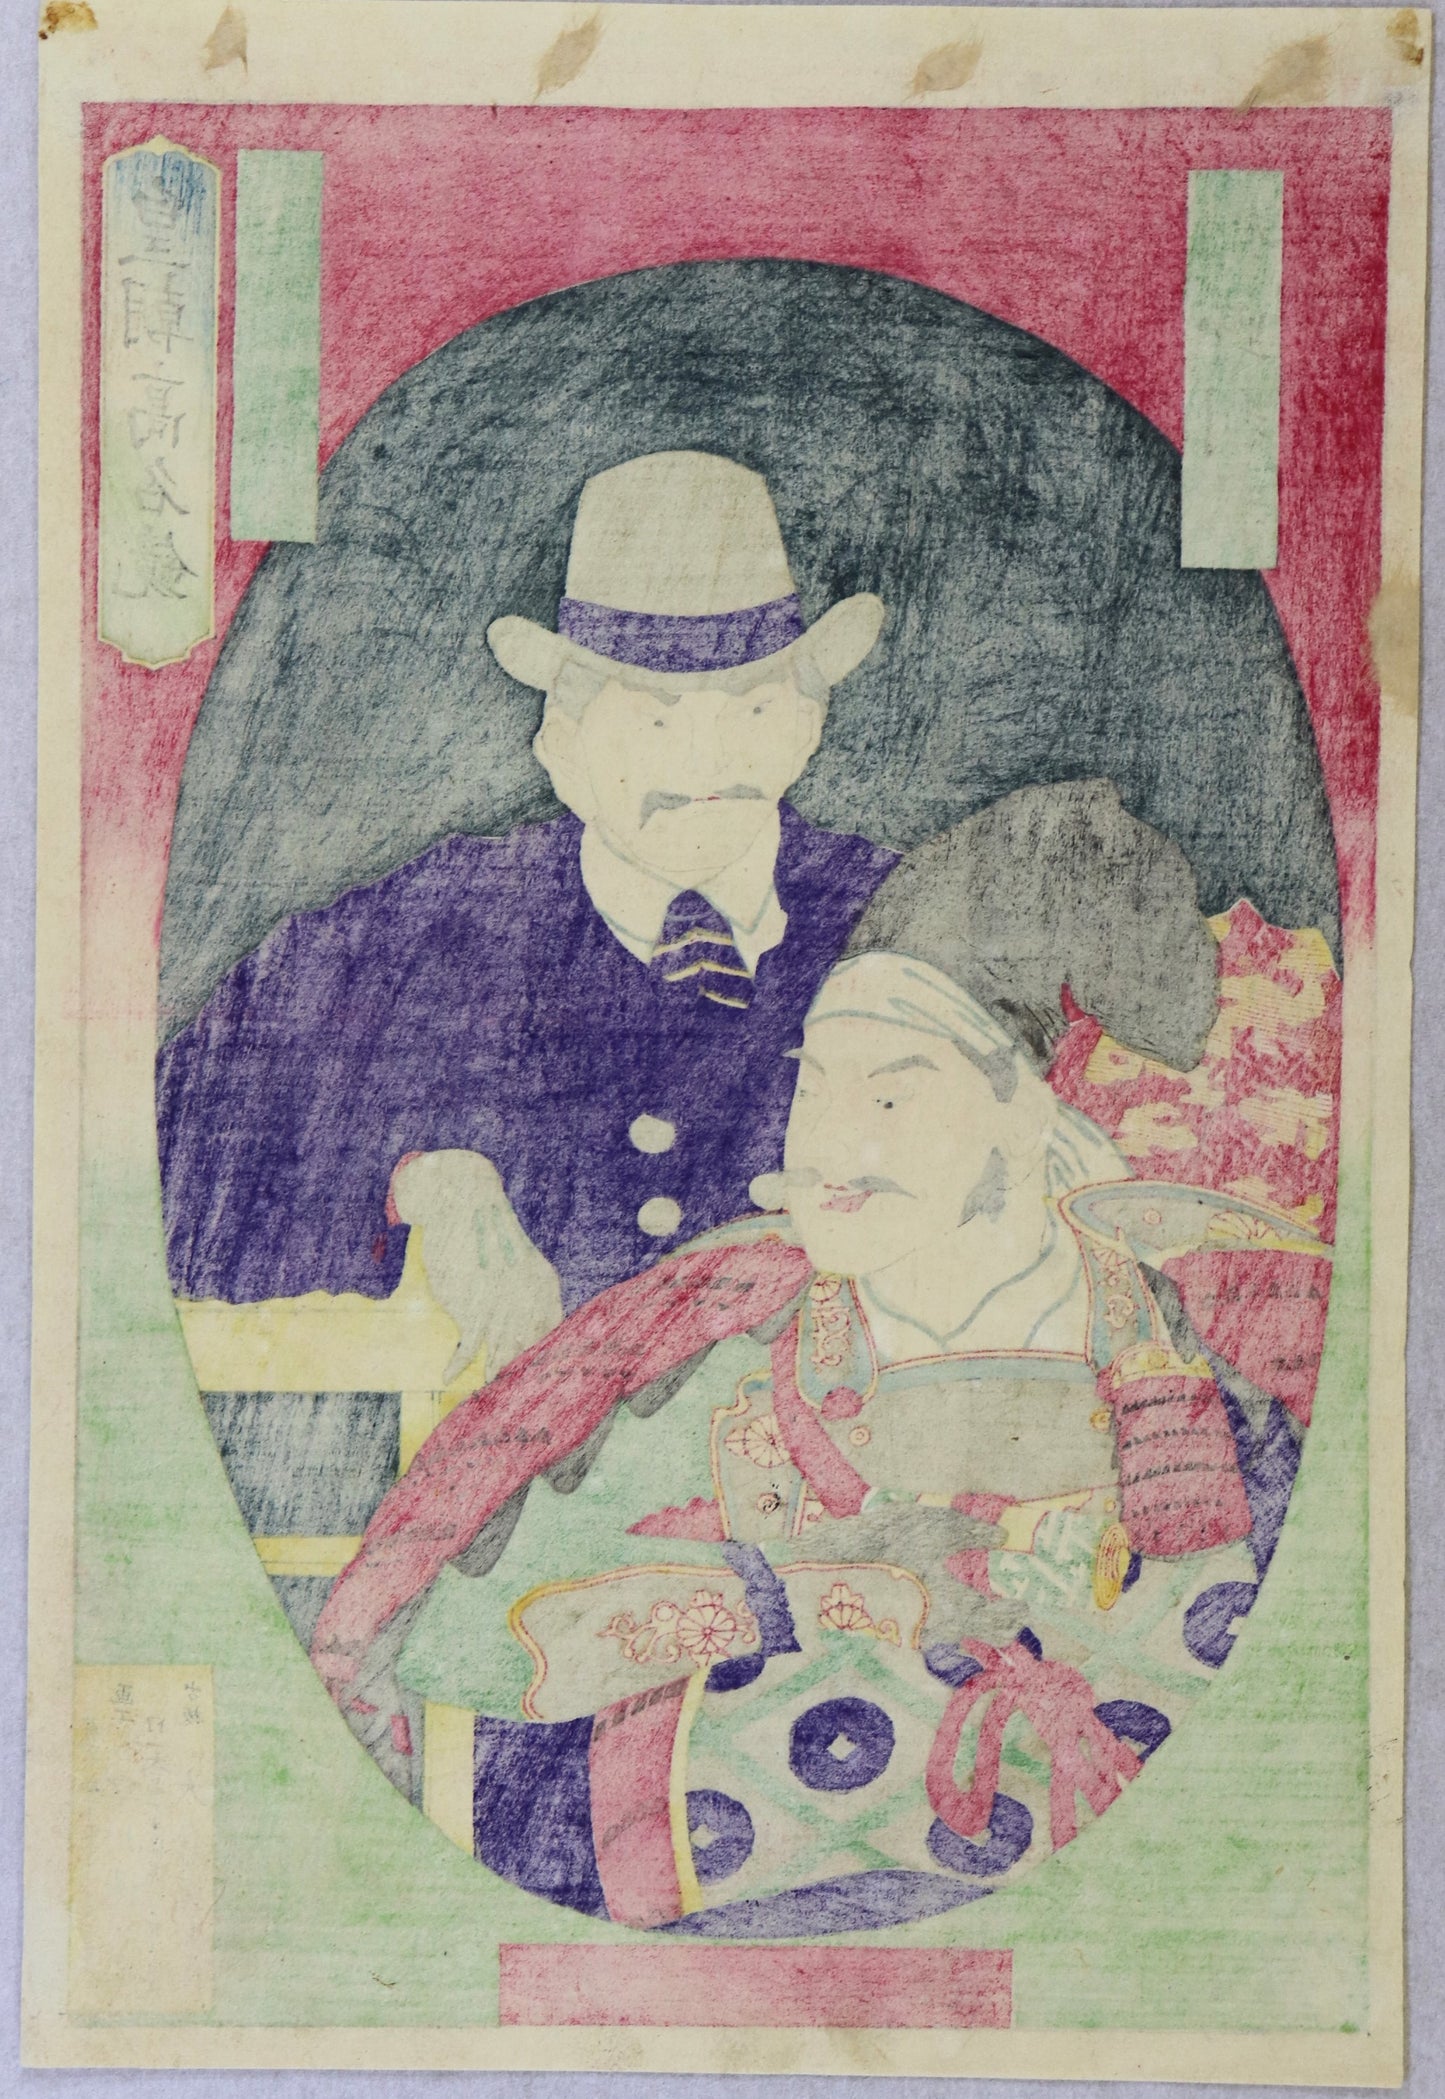 Saigo Takamori and Kirino Toshiaki from the series "Kocho Komyo Kagami" by Hayakawa Shozan/ Saigo Takamori et Kirino Toshiaki de la série "Kocho Komyo Kagami" by Hayakawa Shozan (1877)